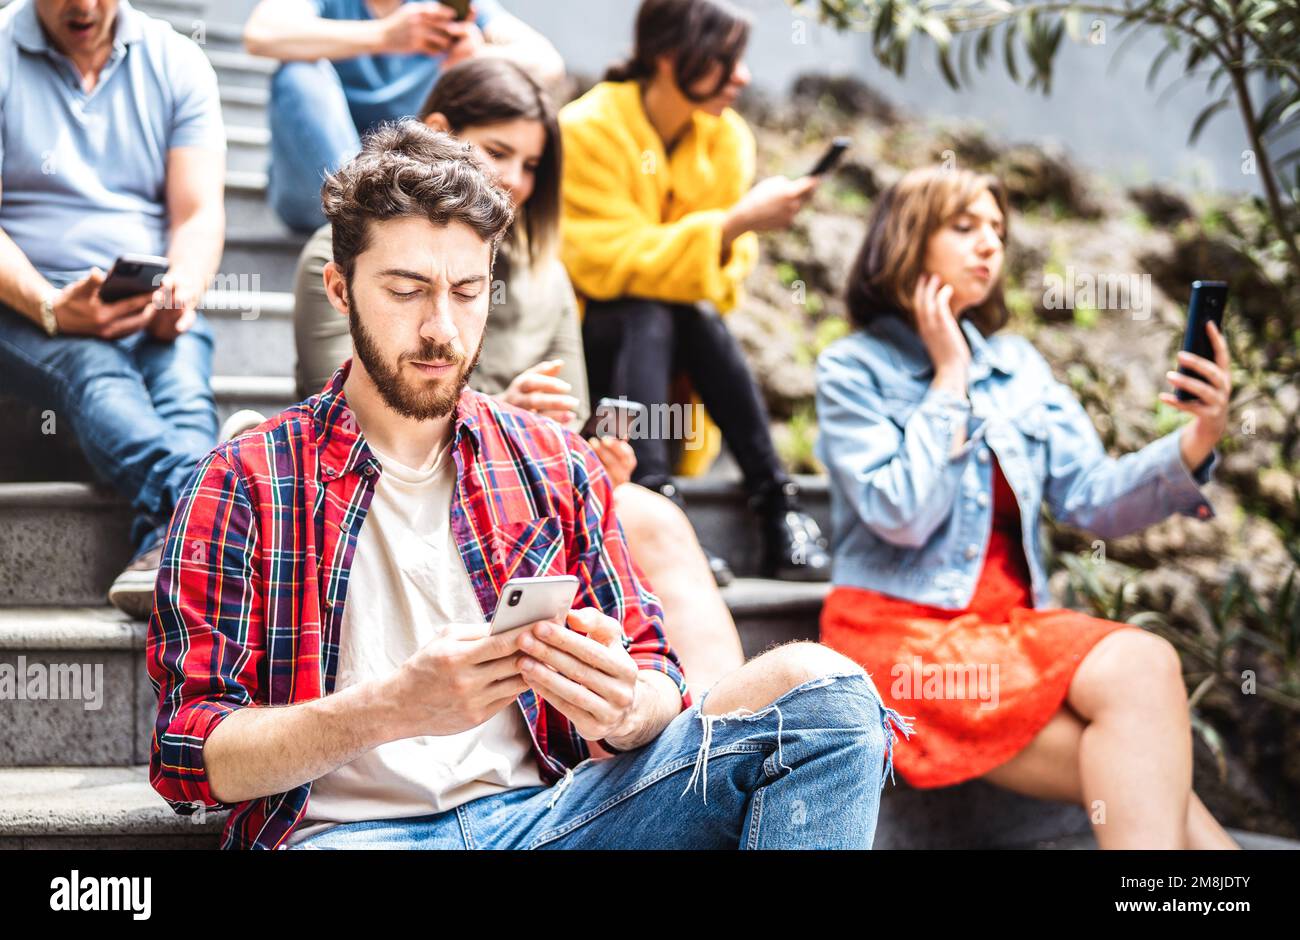 Gelangweilte Gruppe, die ein Smartphone benutzt und auf dem Hof des städtischen Colleges sitzt - Junge Freunde, die von Smartphone-Geräten abhängig sind - Technologiekonzept WIT Stockfoto